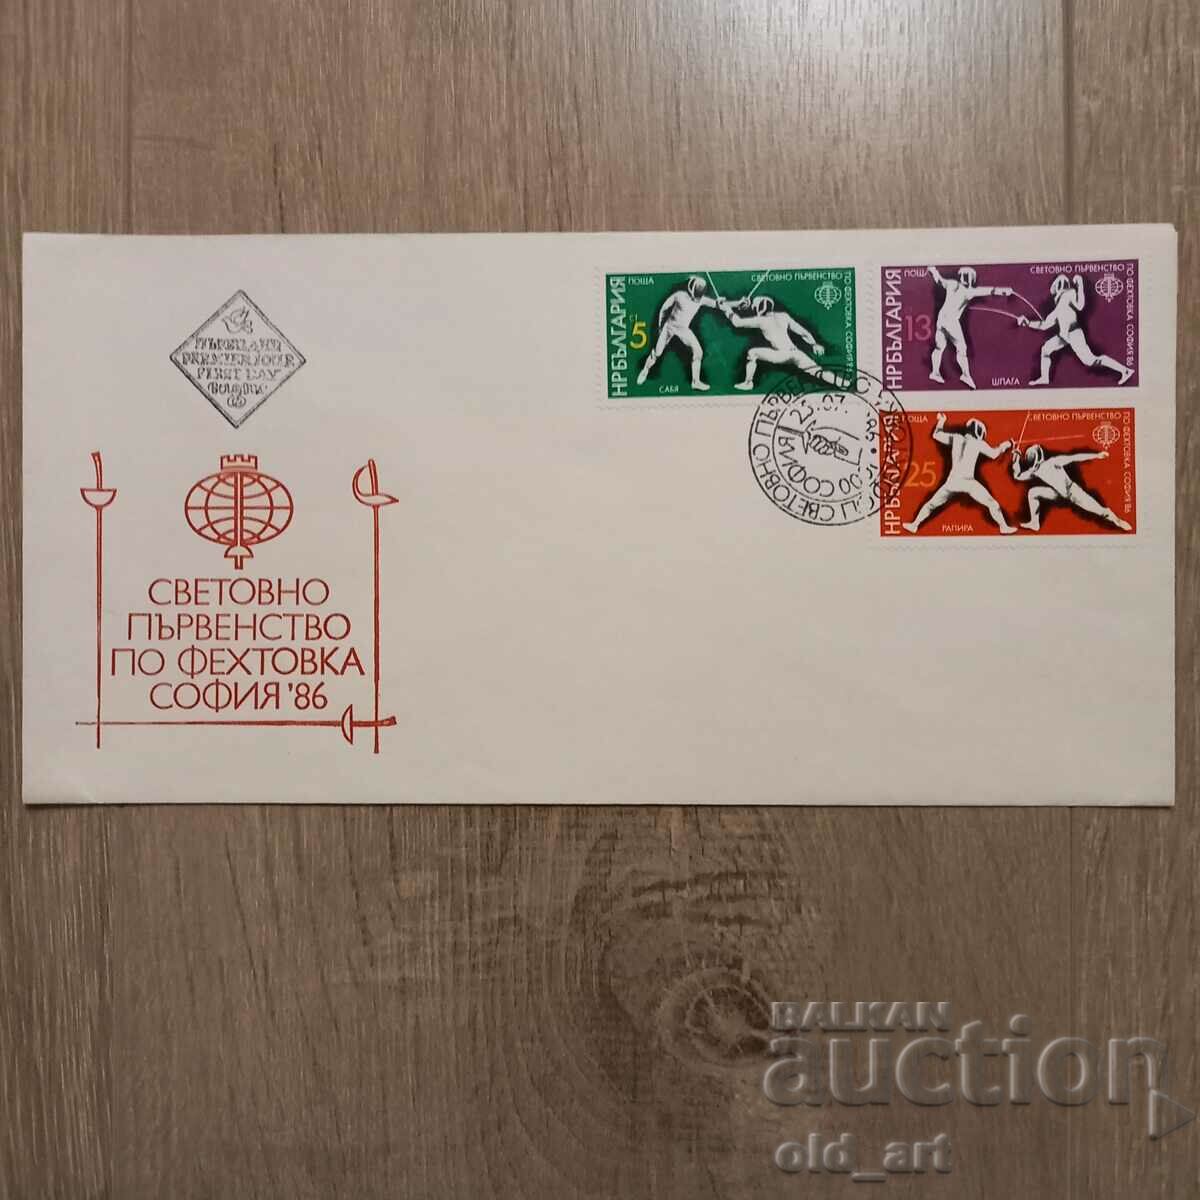 Mailing envelope - World Fencing Championships